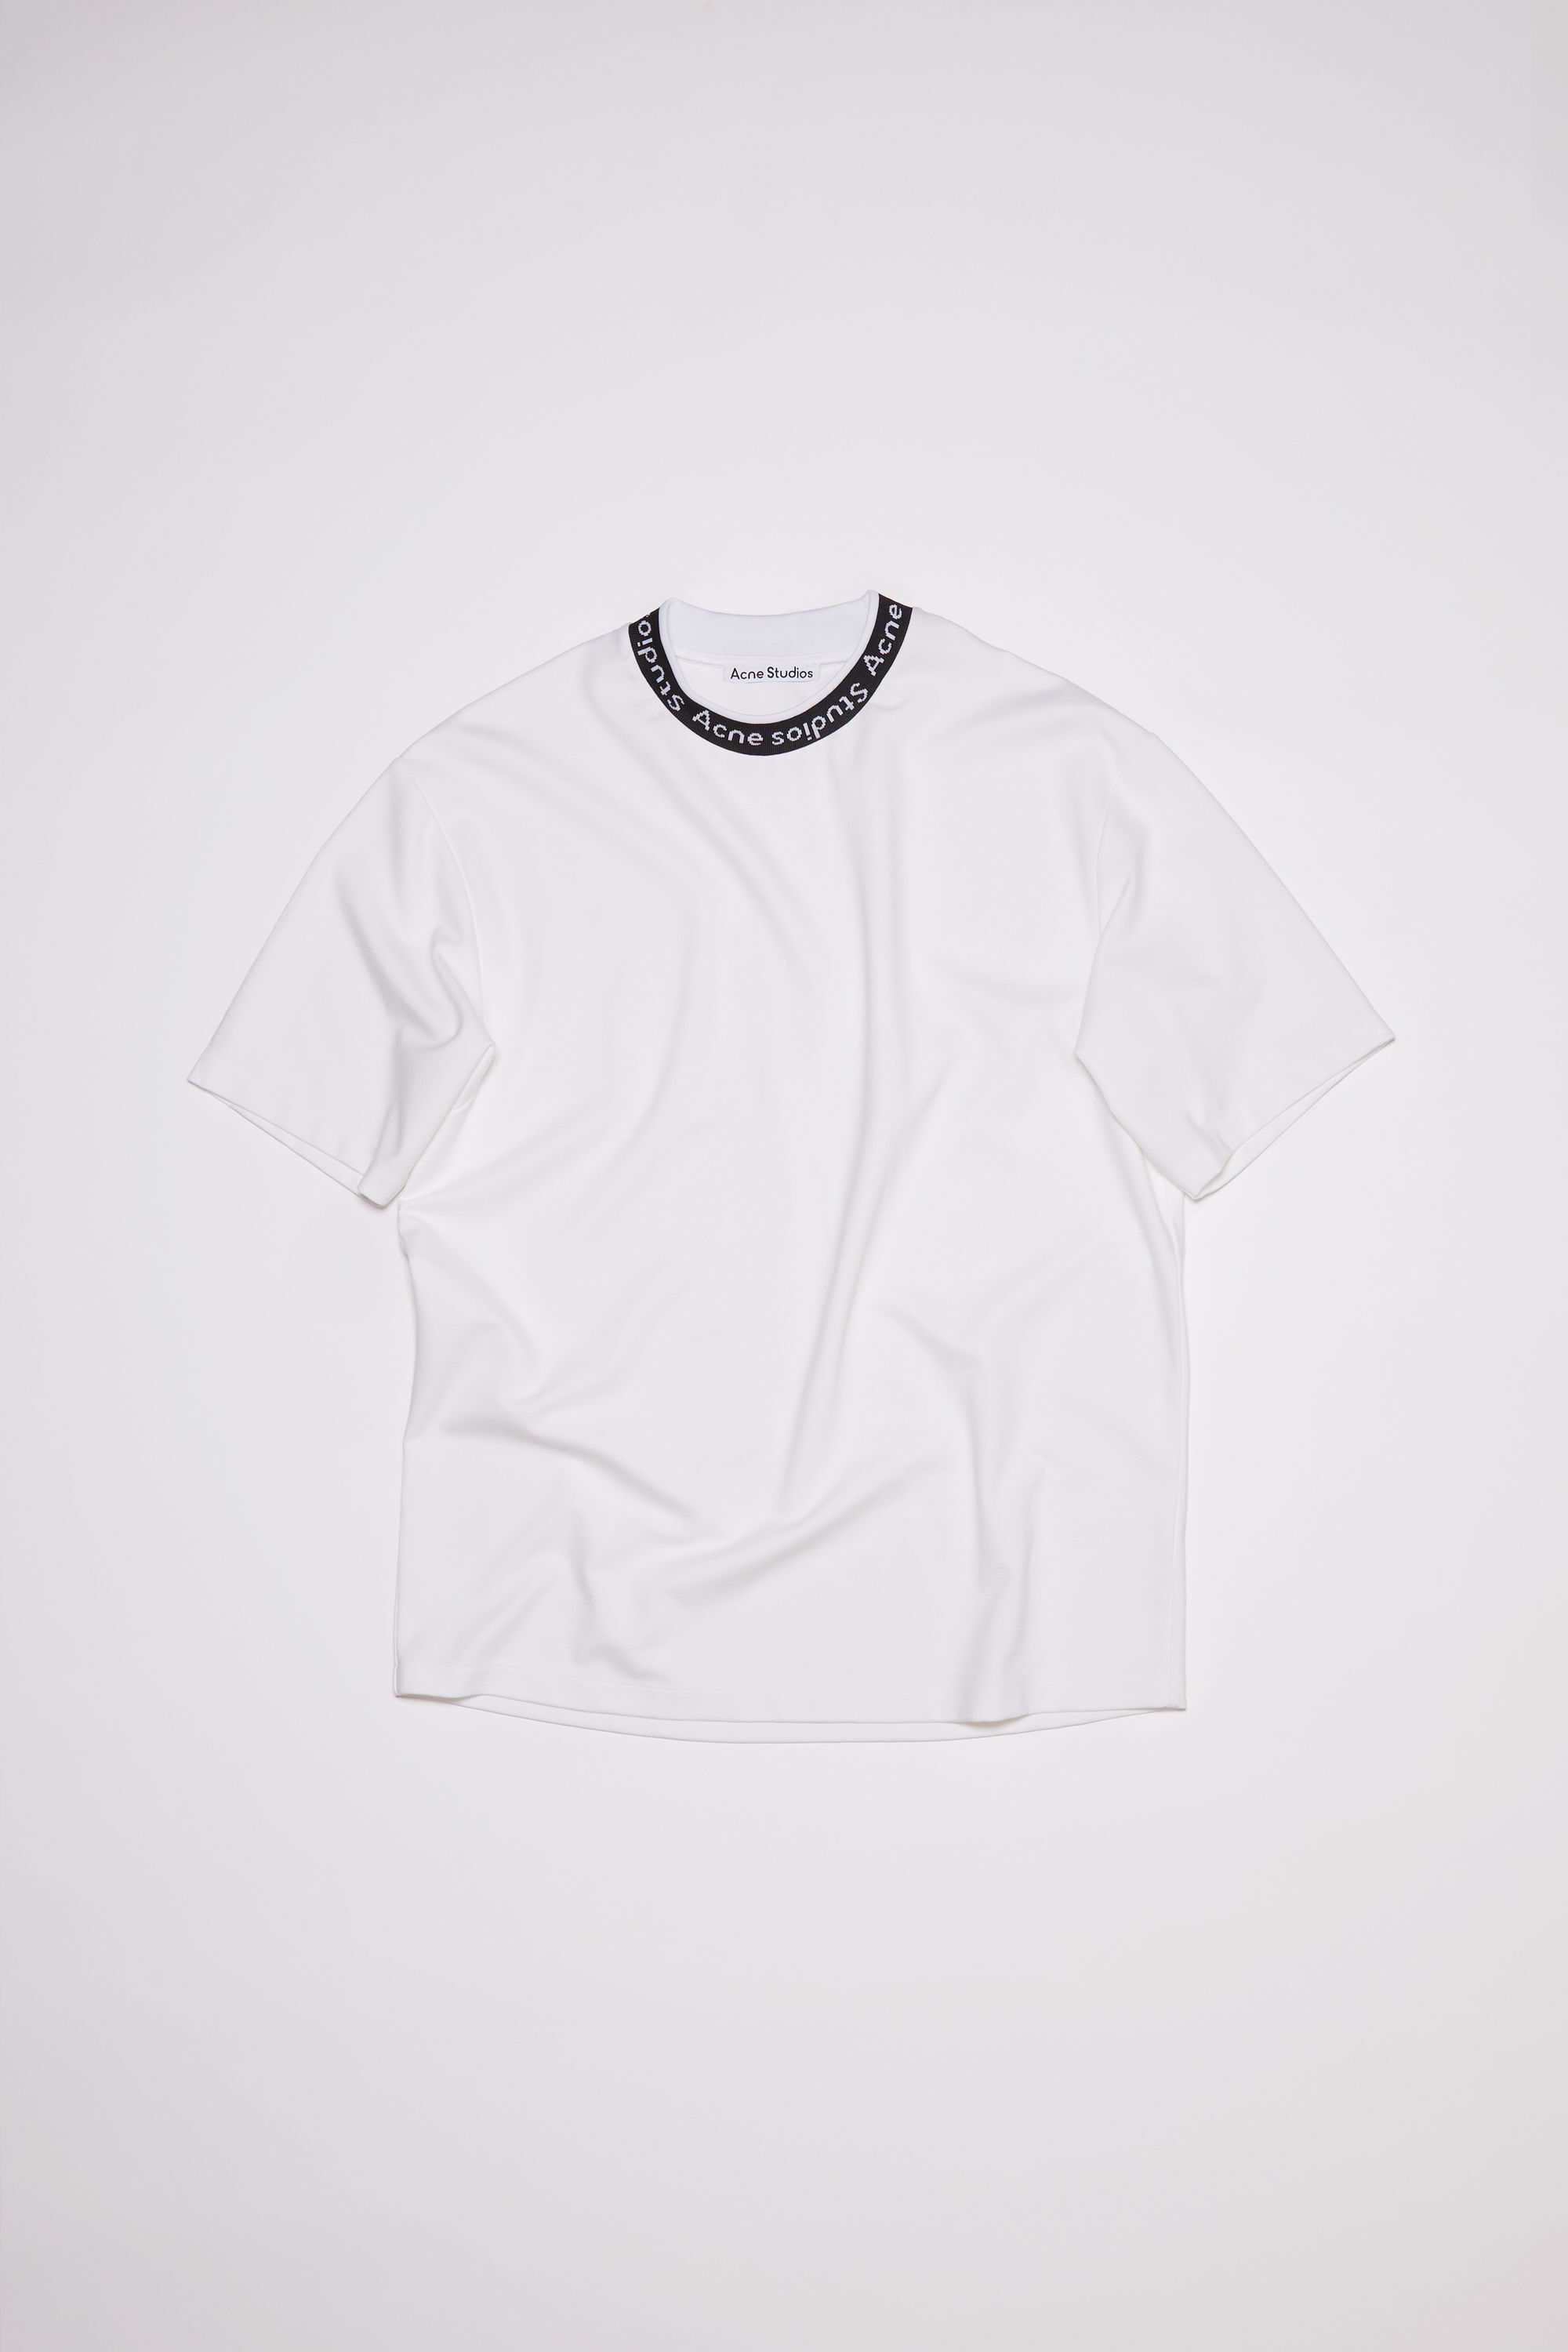 030803●  Acne Studios ロゴ Tシャツ XXS